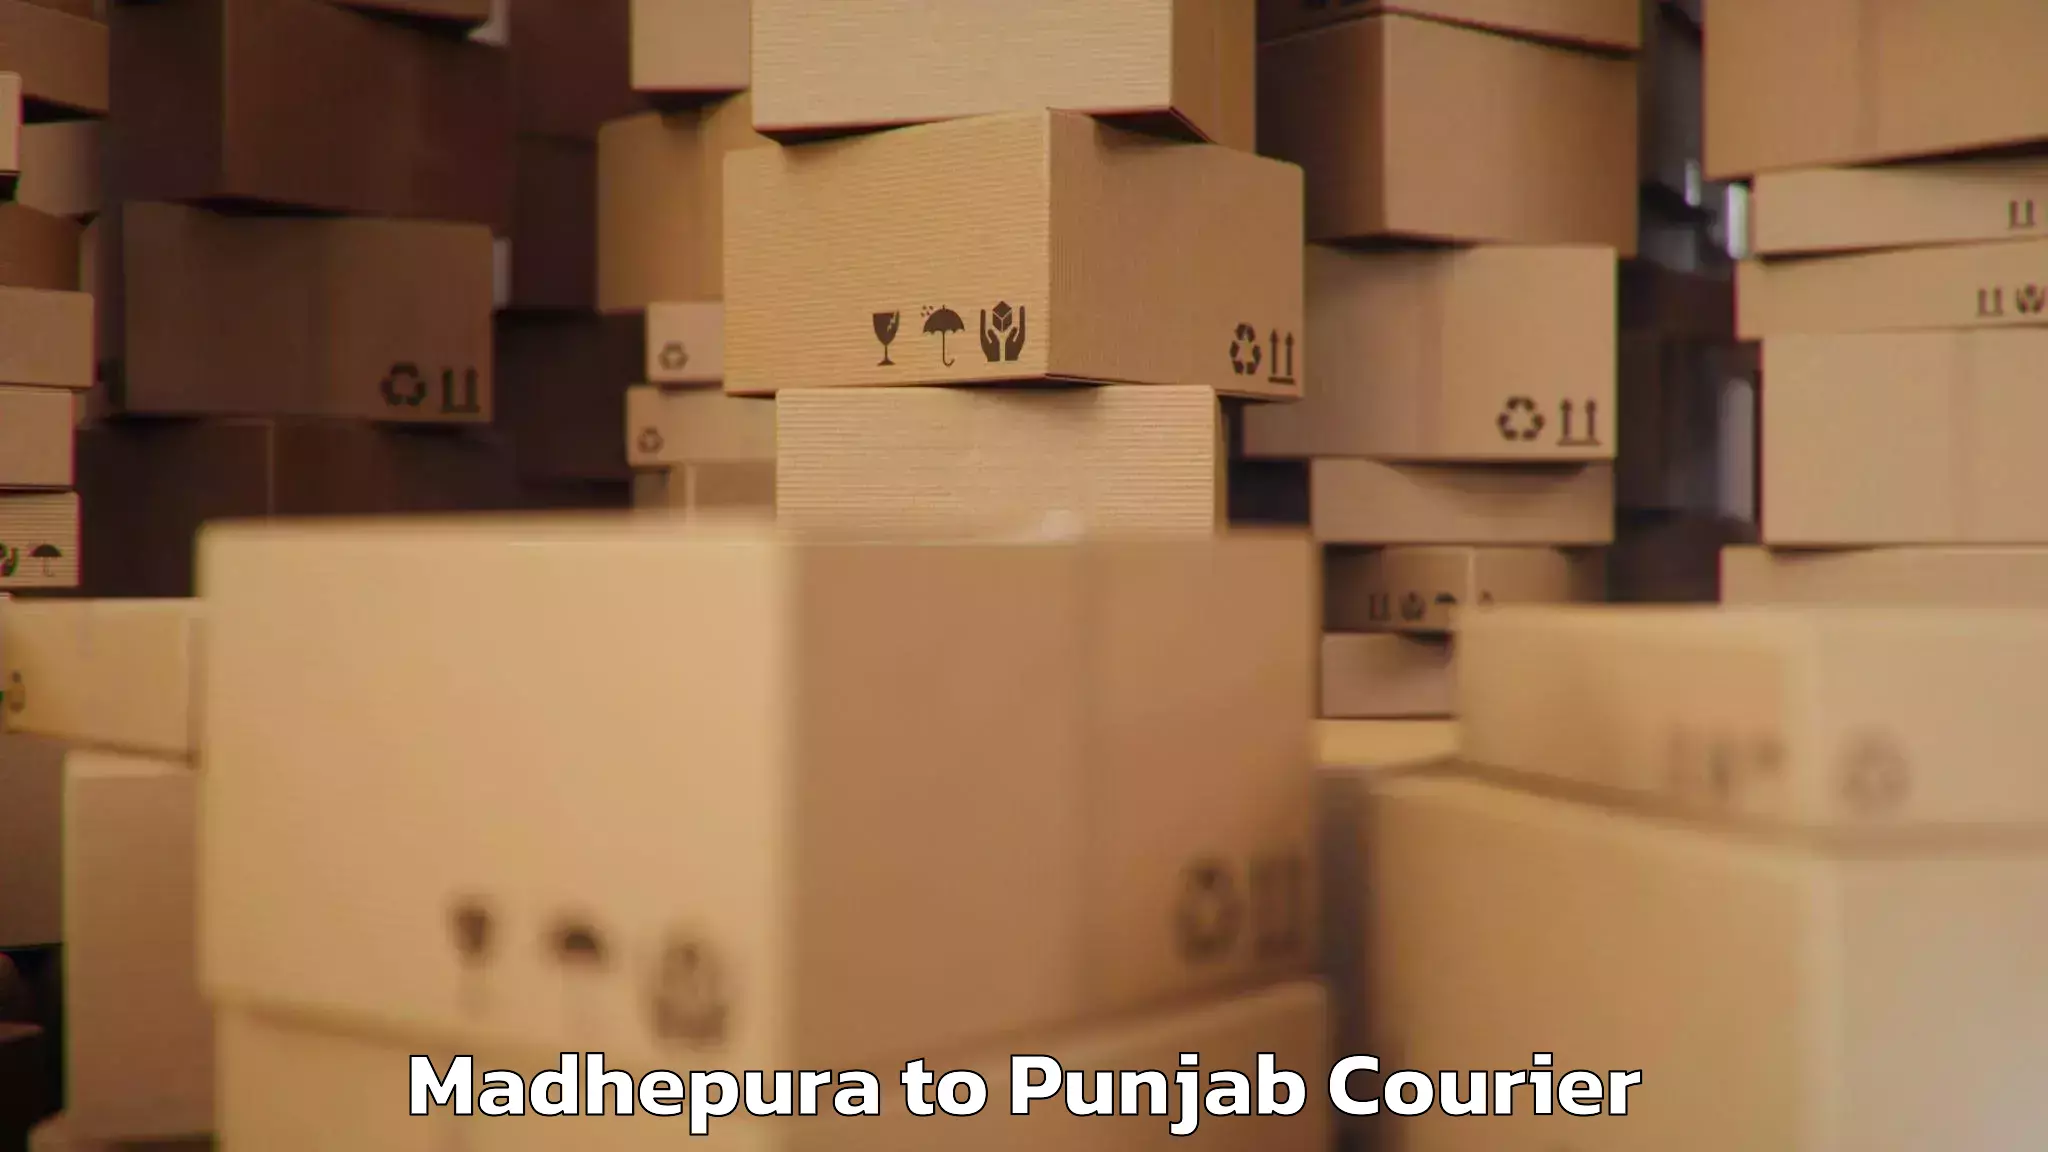 Baggage shipping service Madhepura to Punjab